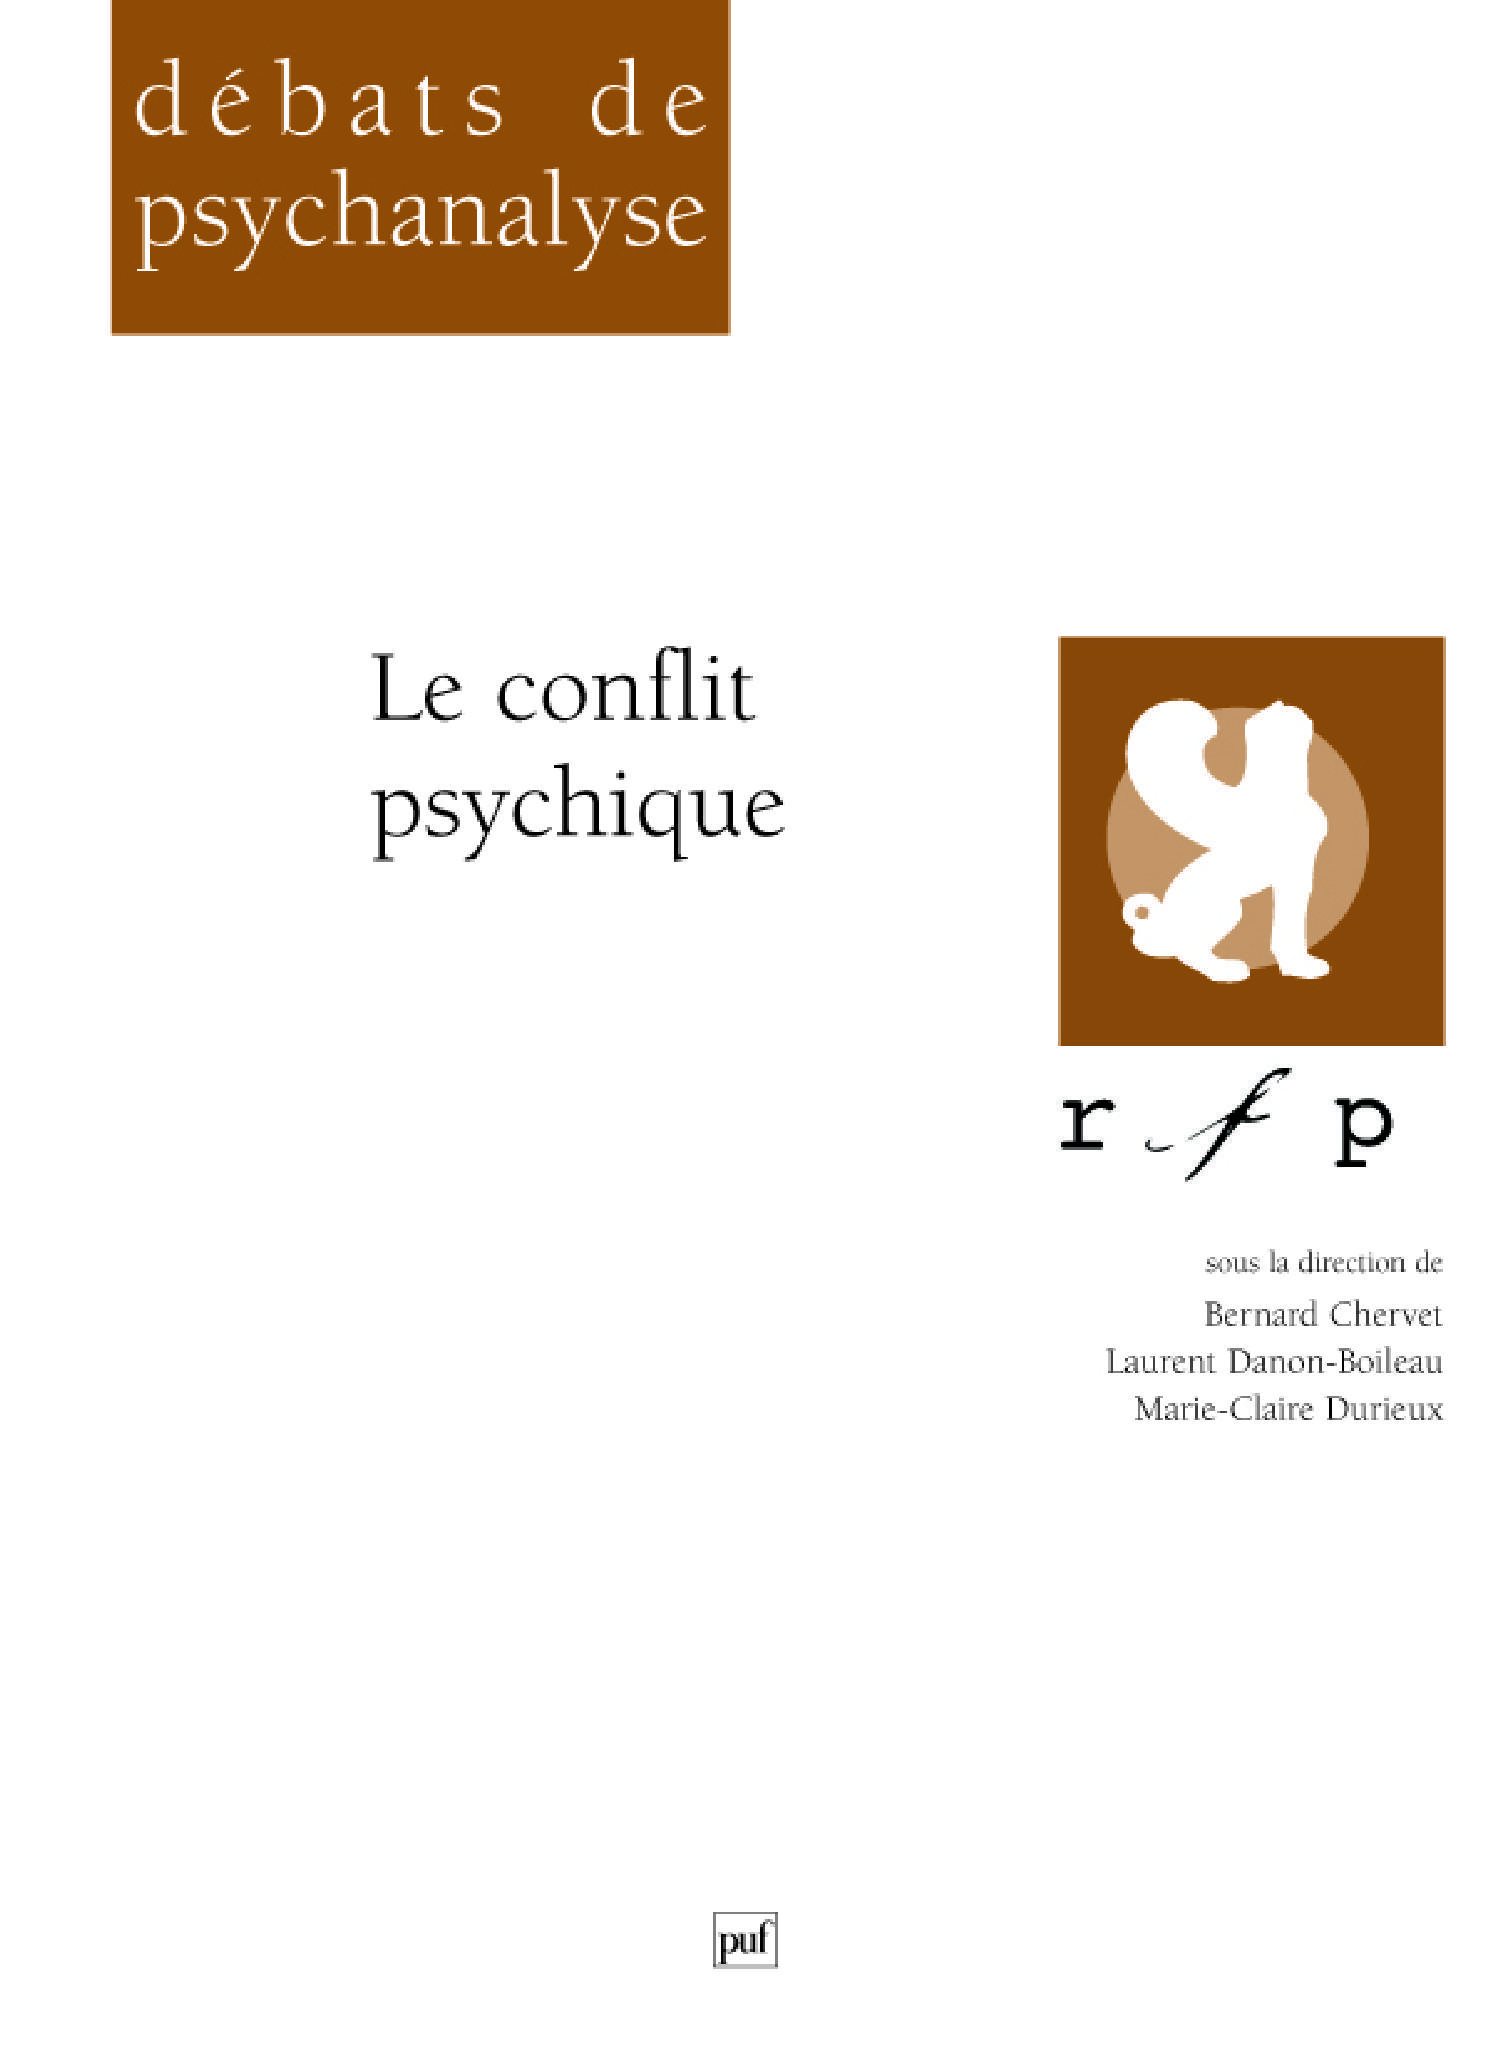 Le conflit psychique De Bernard Chervet, Laurent Danon-Boileau et Marie-Claire Durieux - Presses Universitaires de France